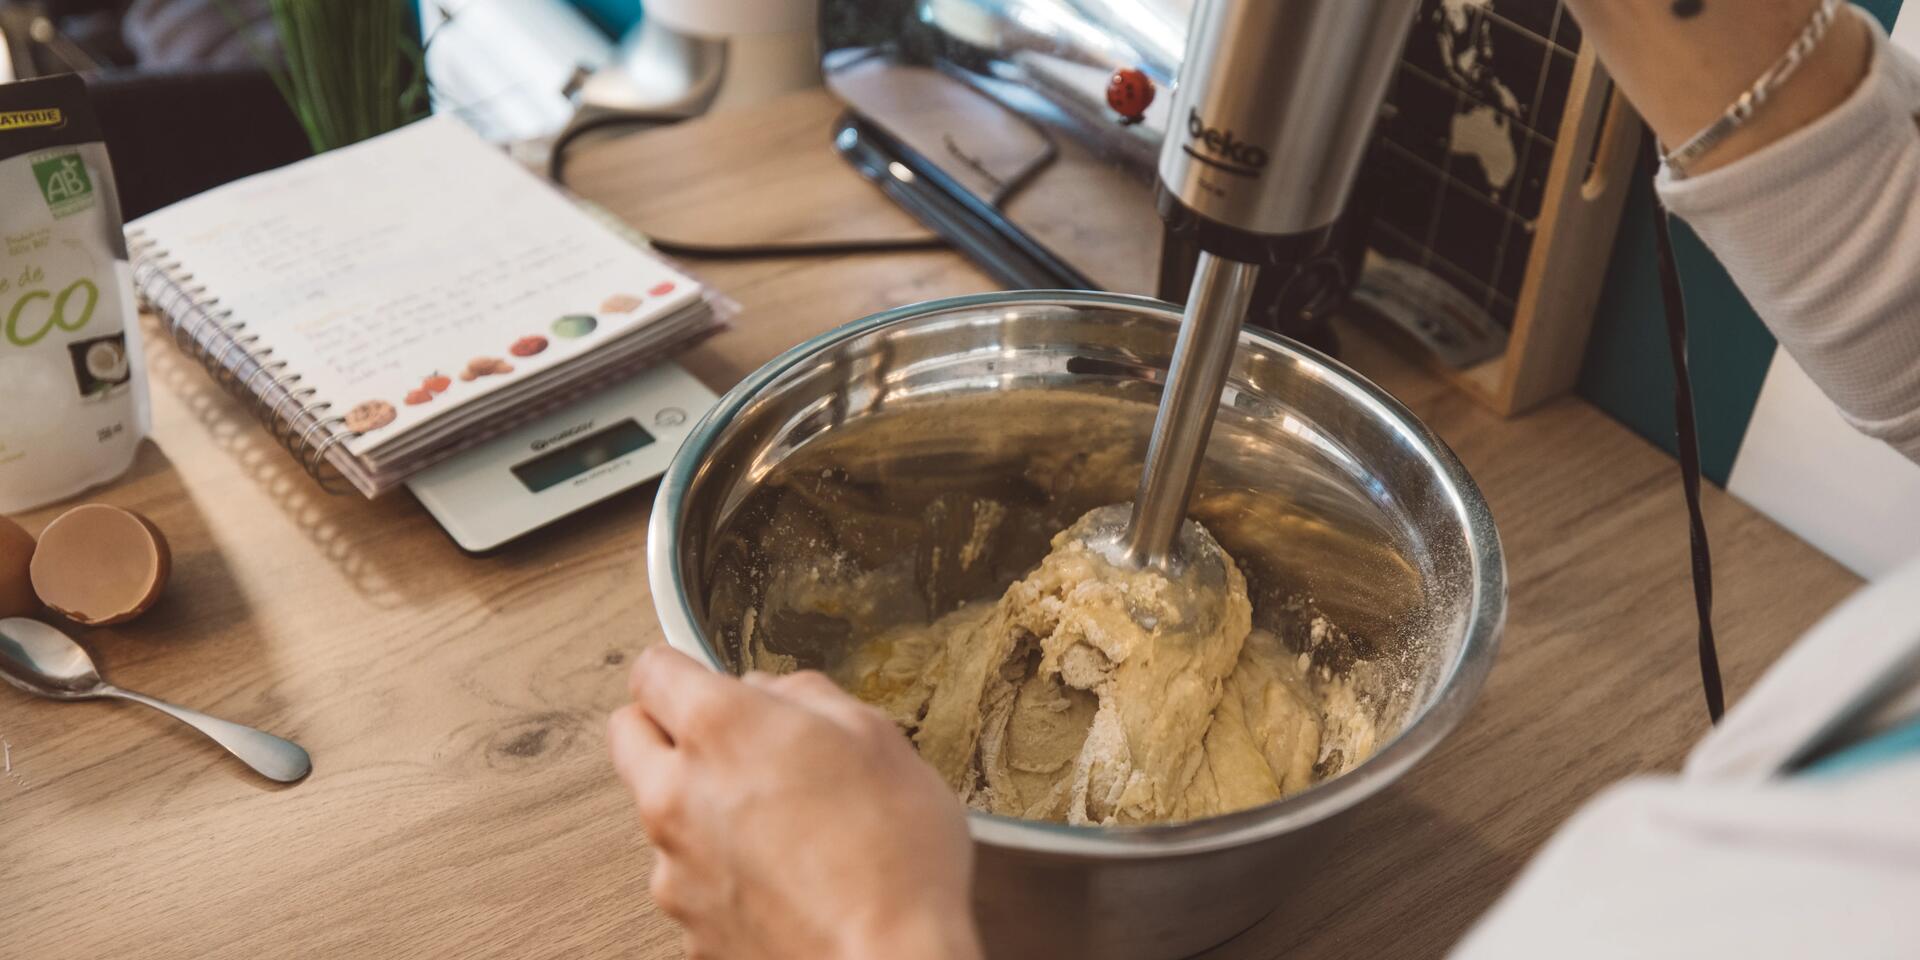 Mandelpulver, Mehl und Proteinpulver für die Low Carb Kekse miteinander vermischen